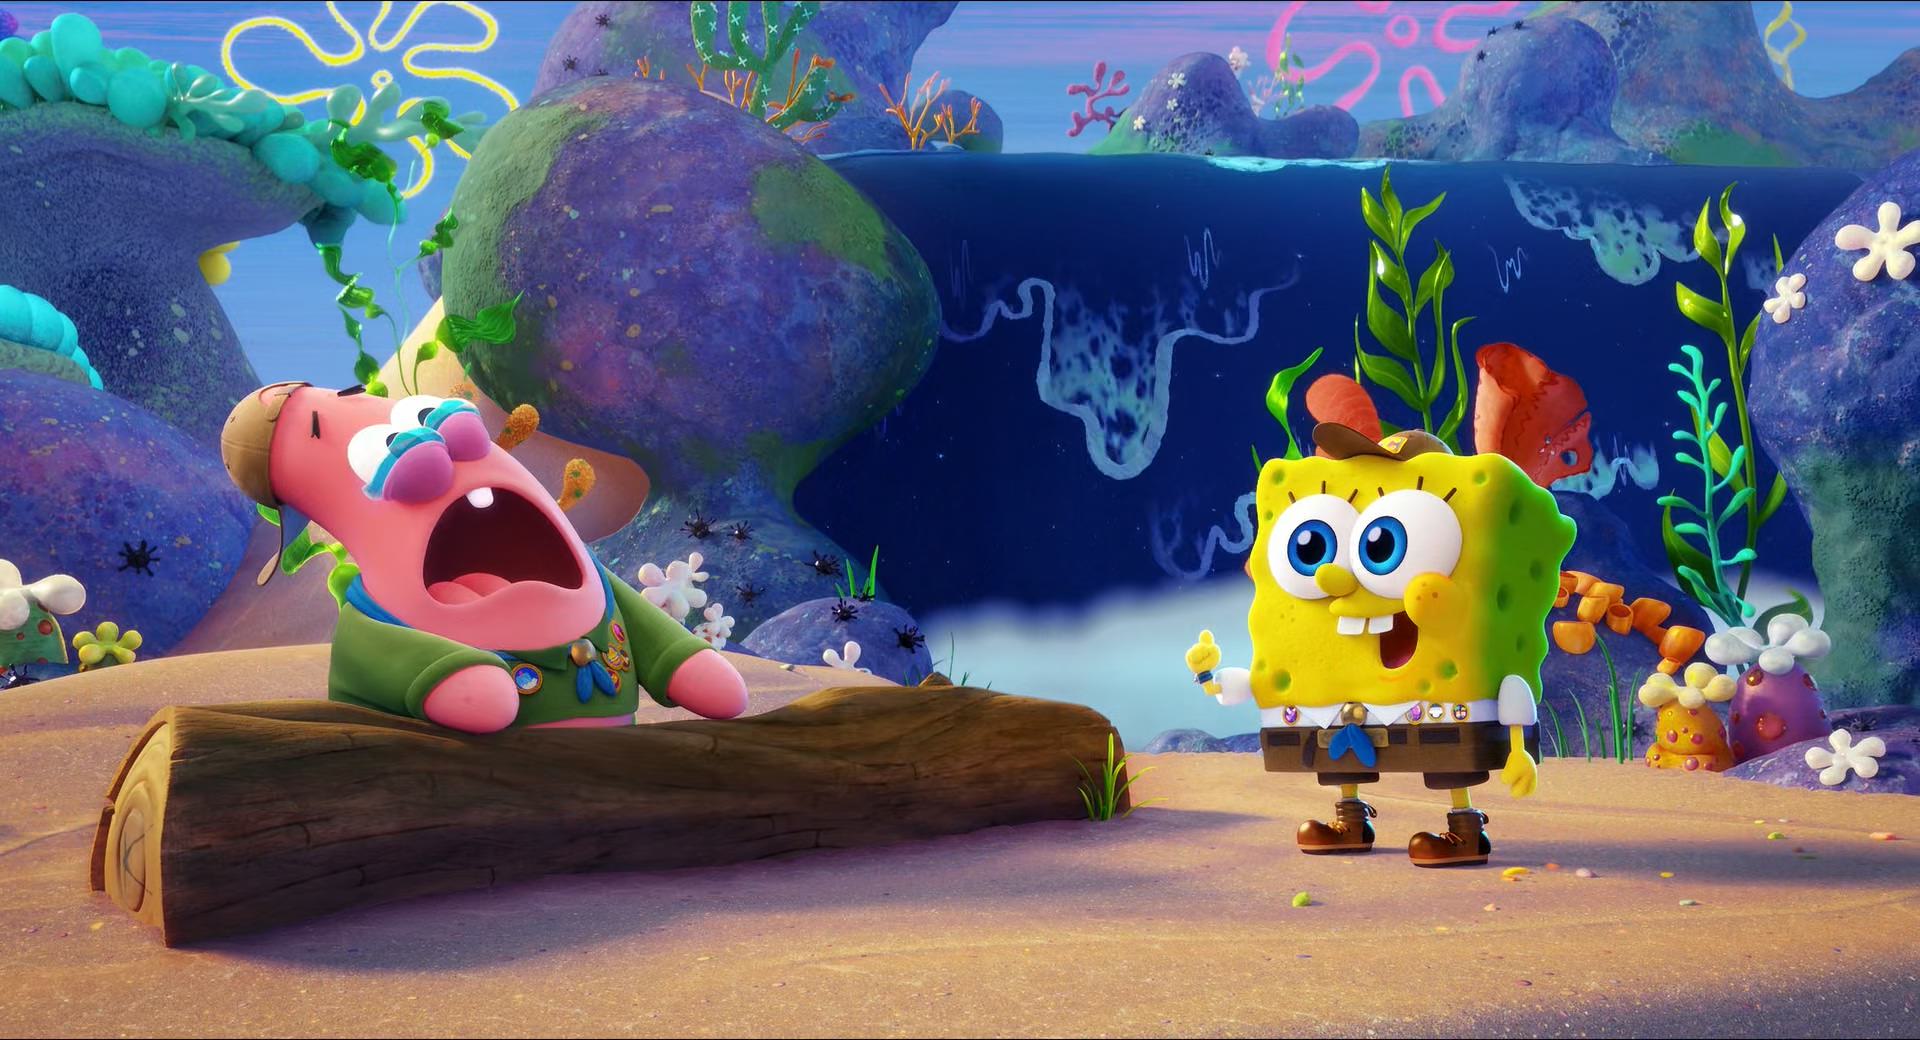 آشنایی باب اسفنجی و پاتریک در دوران کودکی در انیمیشن The SpongeBob Movie: Sponge on the Run